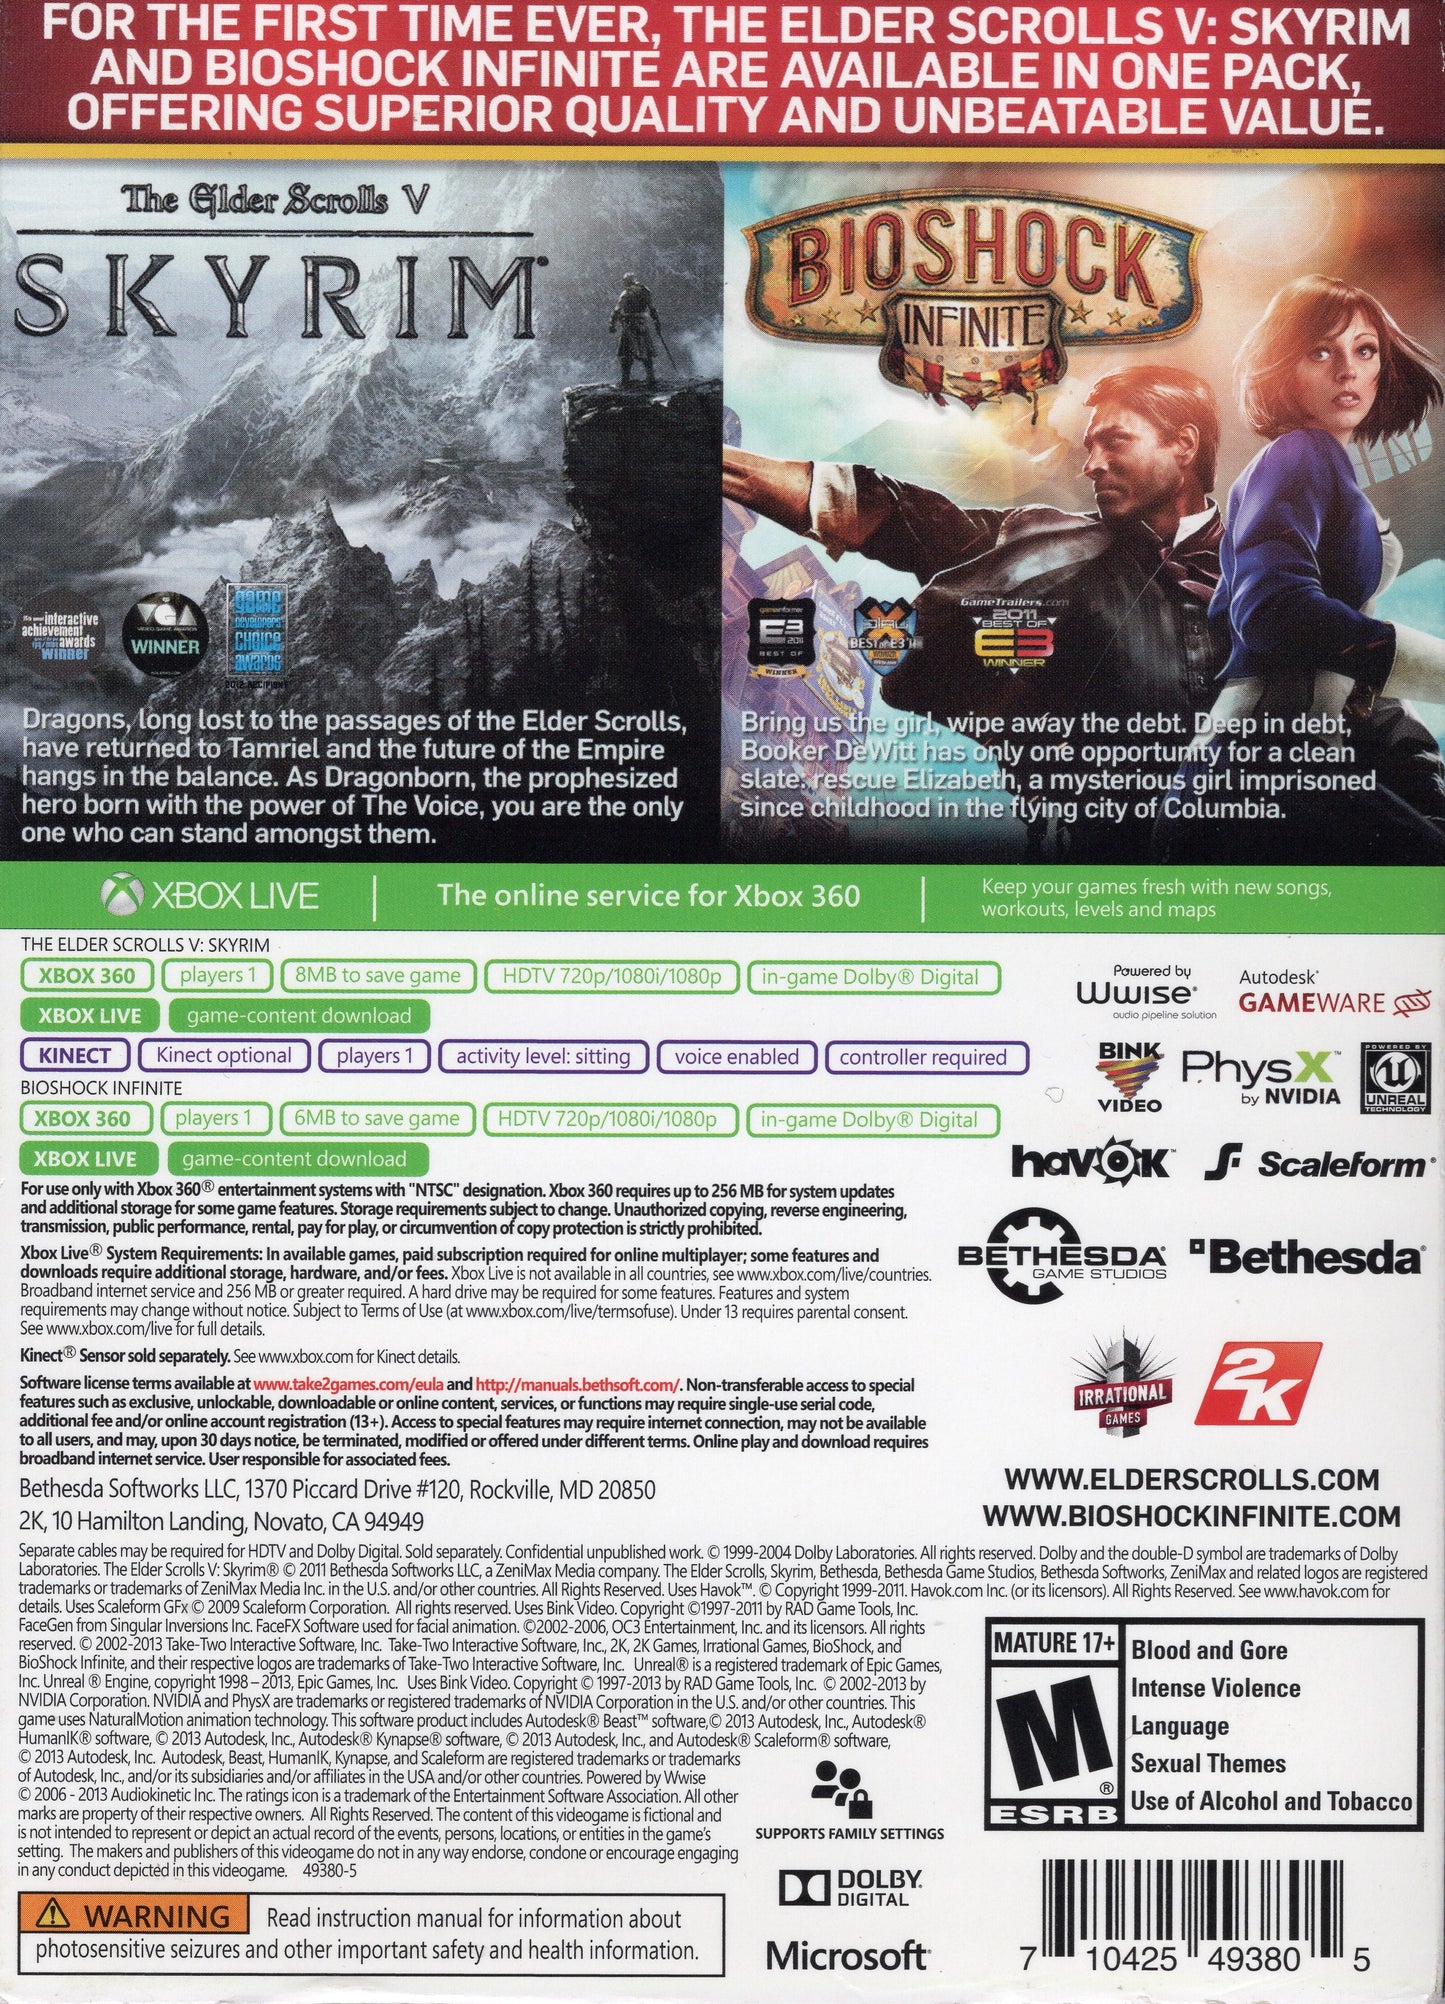 Xbox 360 Skyrim & Bioshock Infinite 2 Game Pack